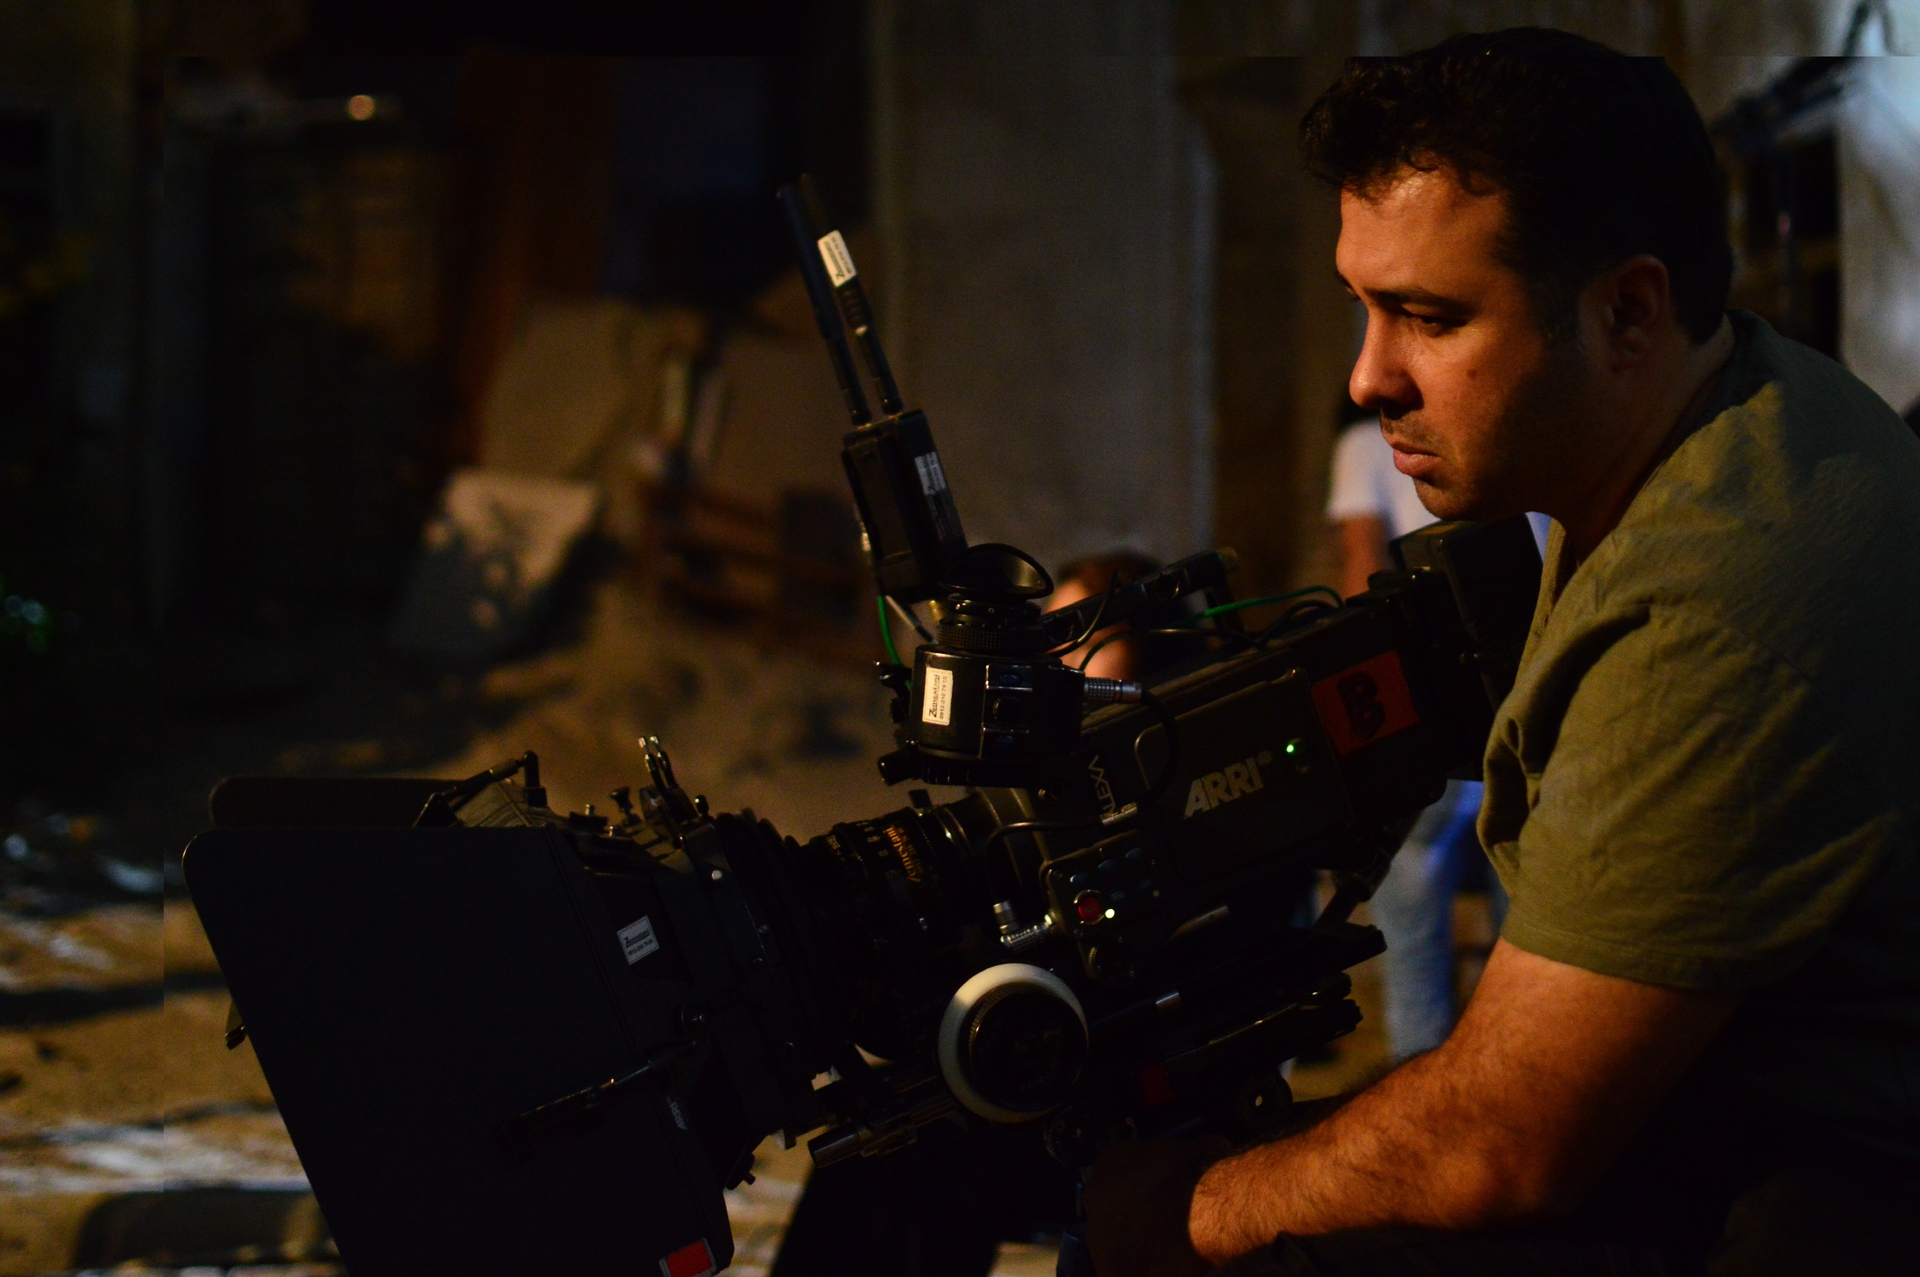 تصویری از مهدی افشار، مدیر فیلم برداری و دستیار دوم فیلمبردار سینما و تلویزیون در حال بازیگری سر صحنه یکی از آثارش